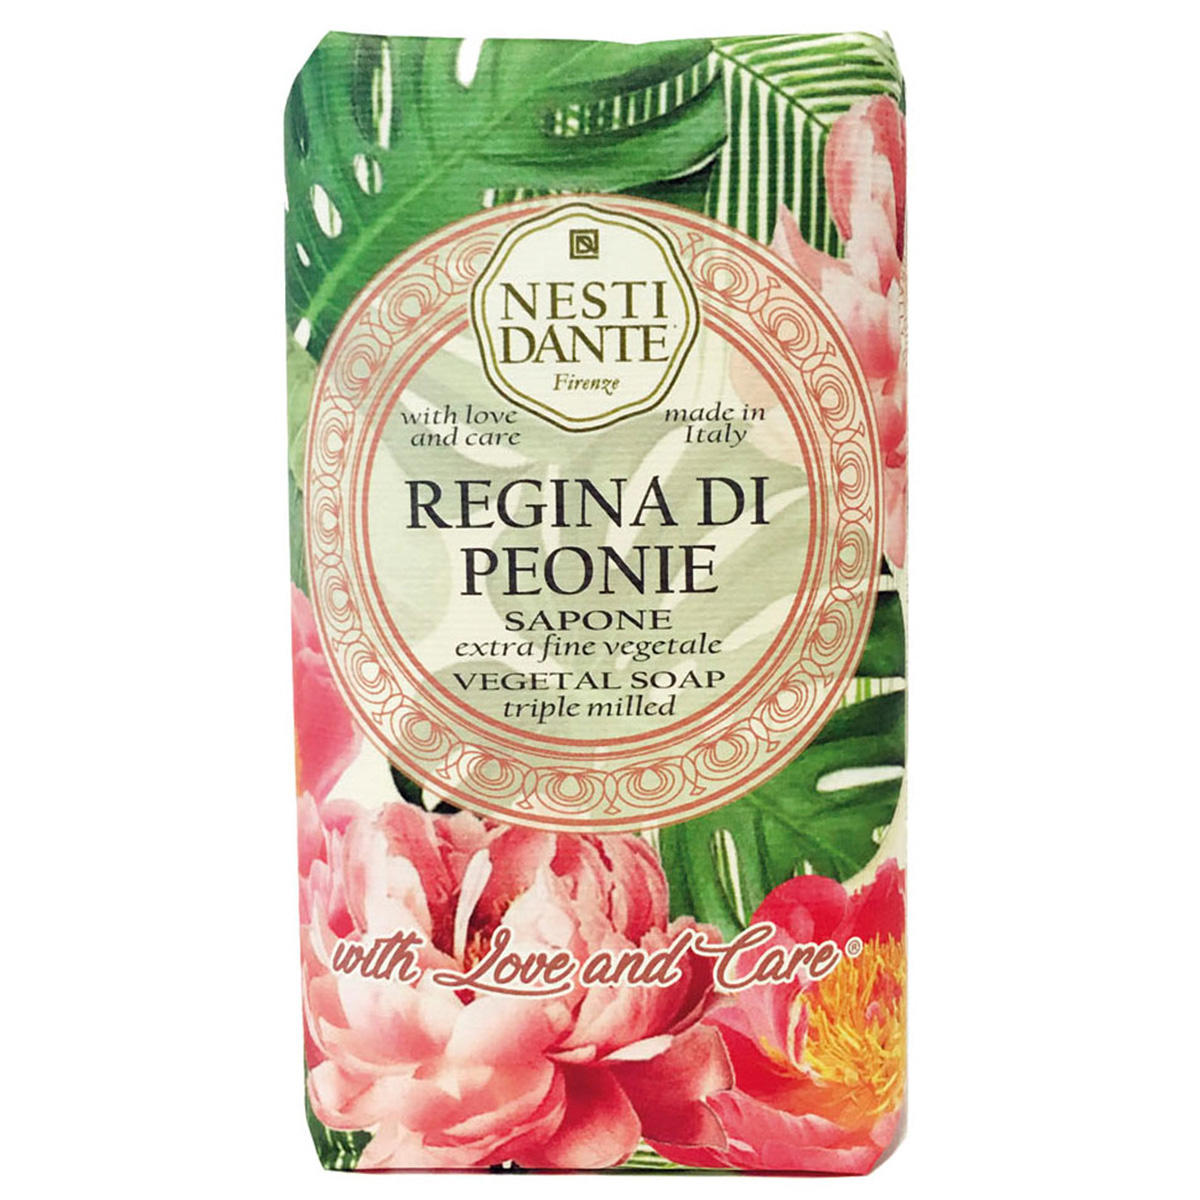 Nesti Dante Love & Care Regina di Peonie Vegetal Soap 250 g - 1